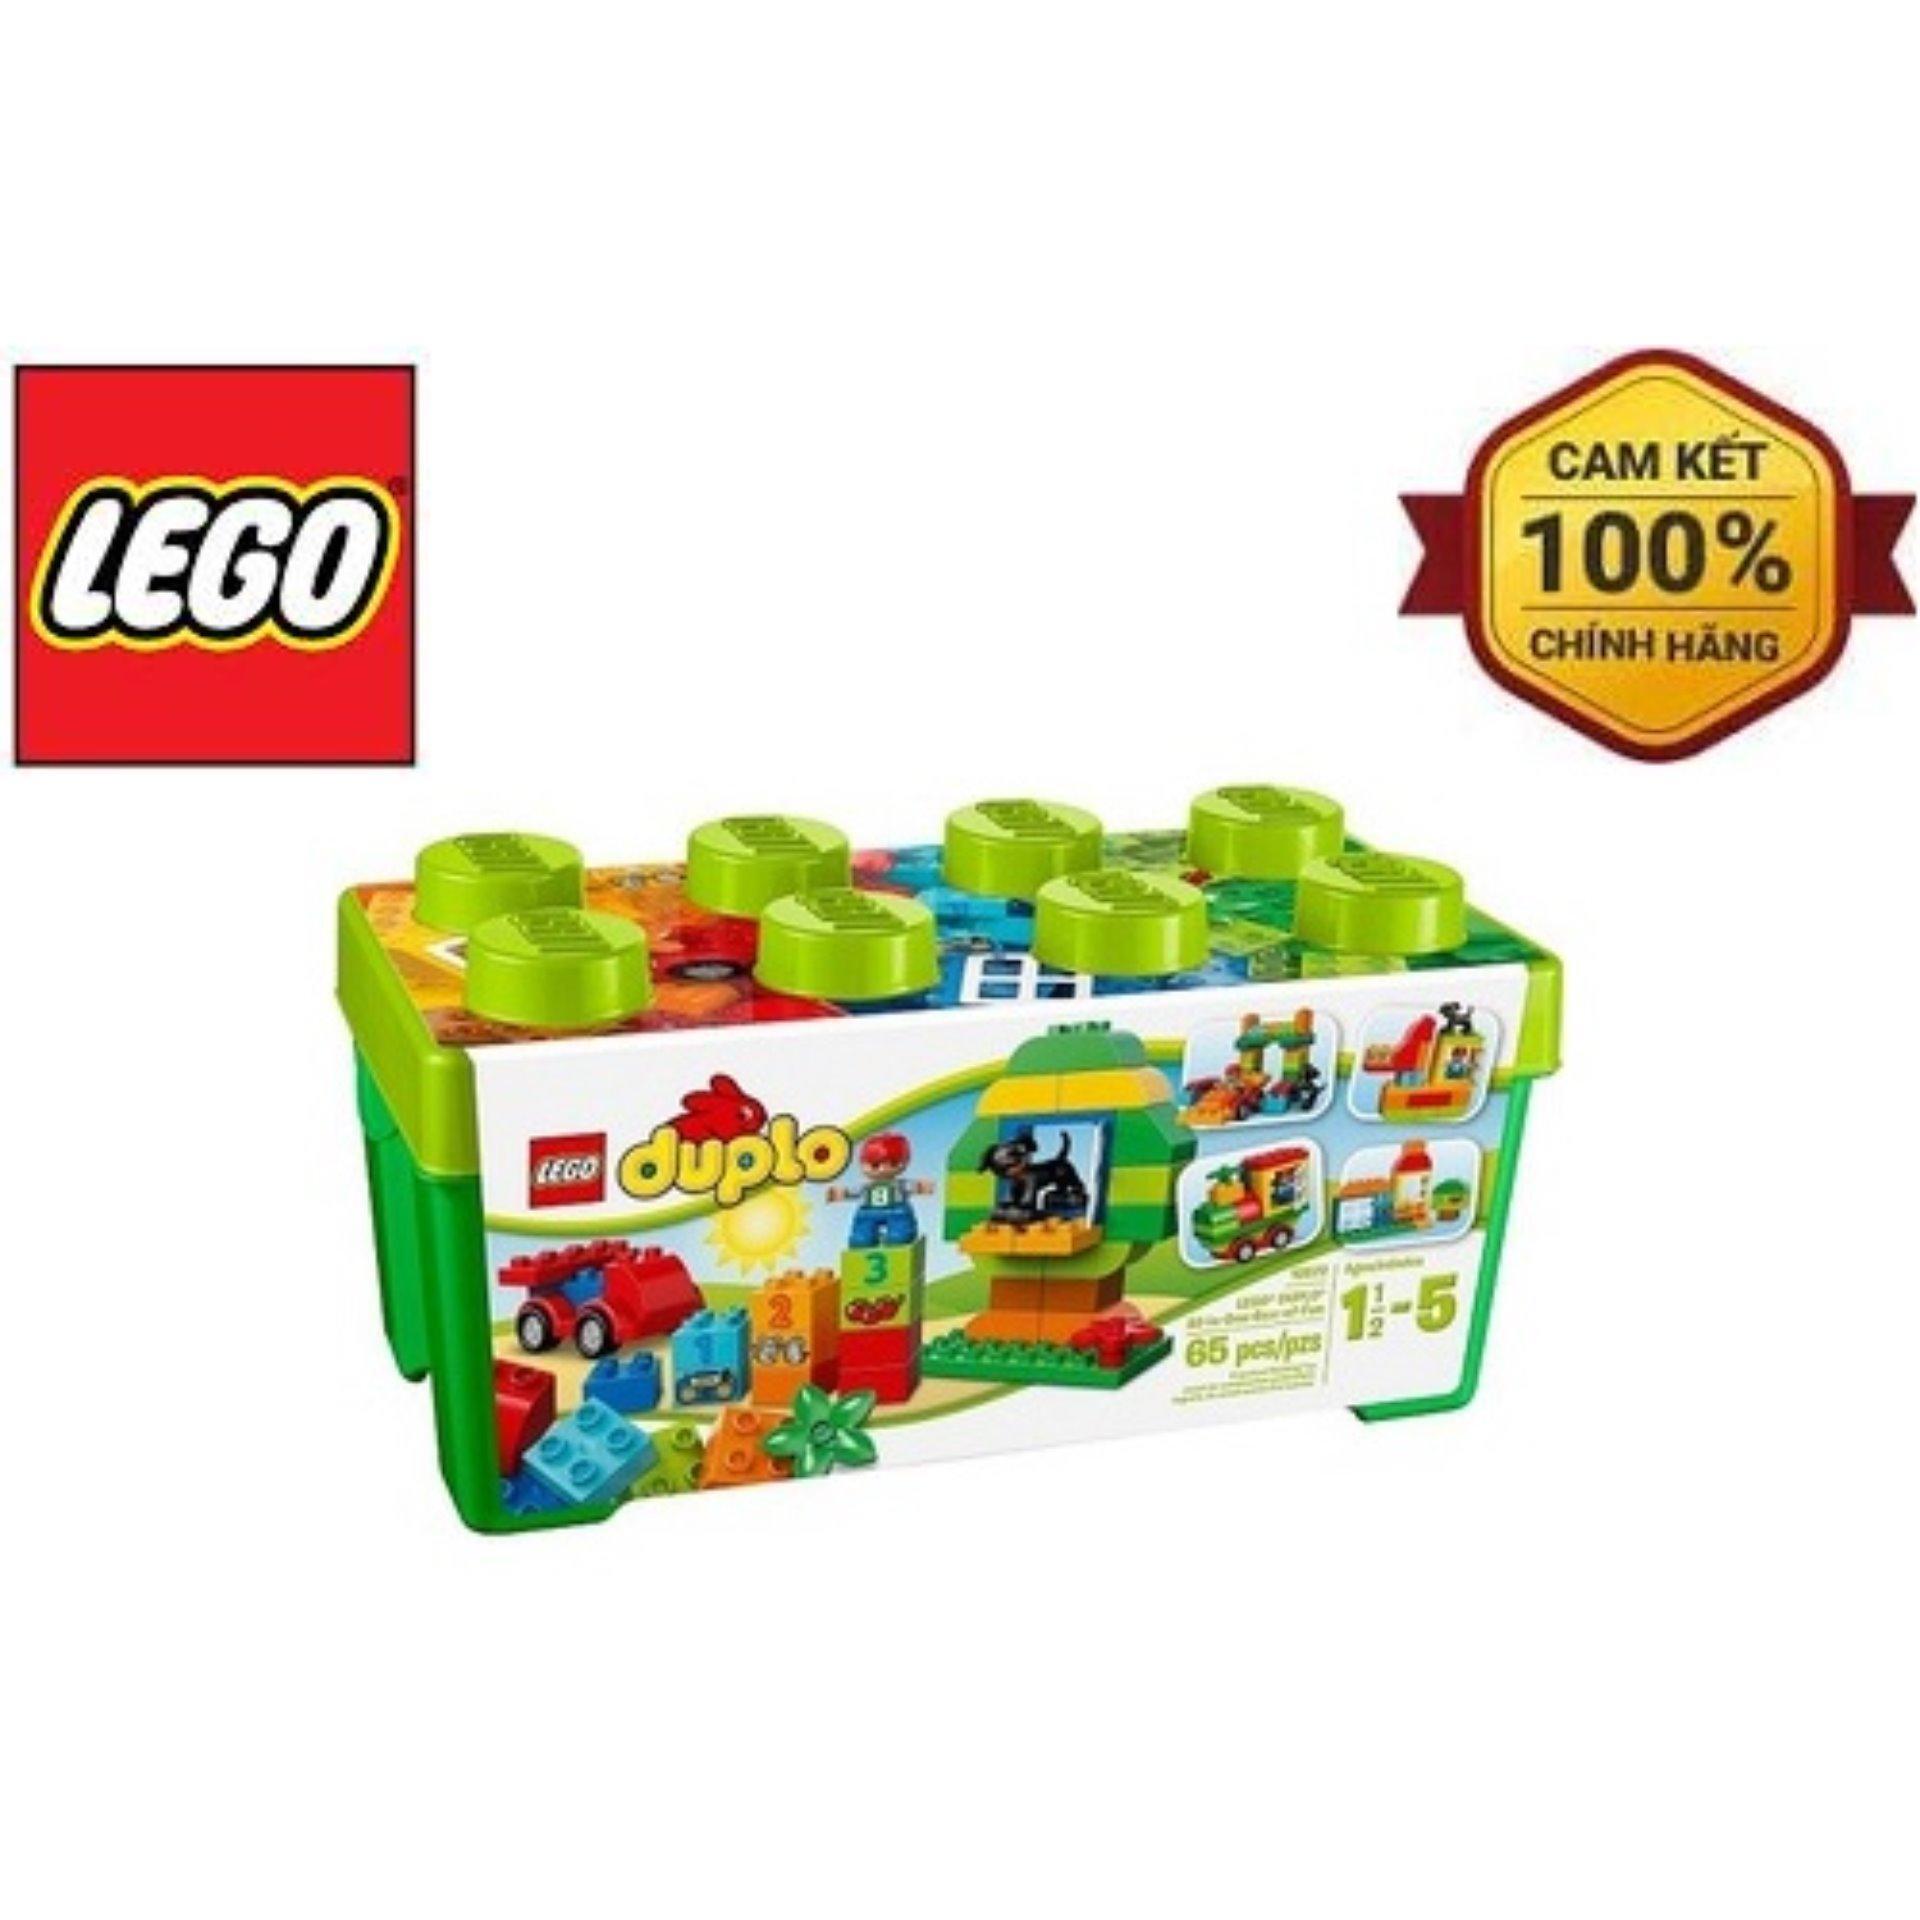 Bộ xếp hình Thùng gạch Duplo vui nhộn Lego 10572